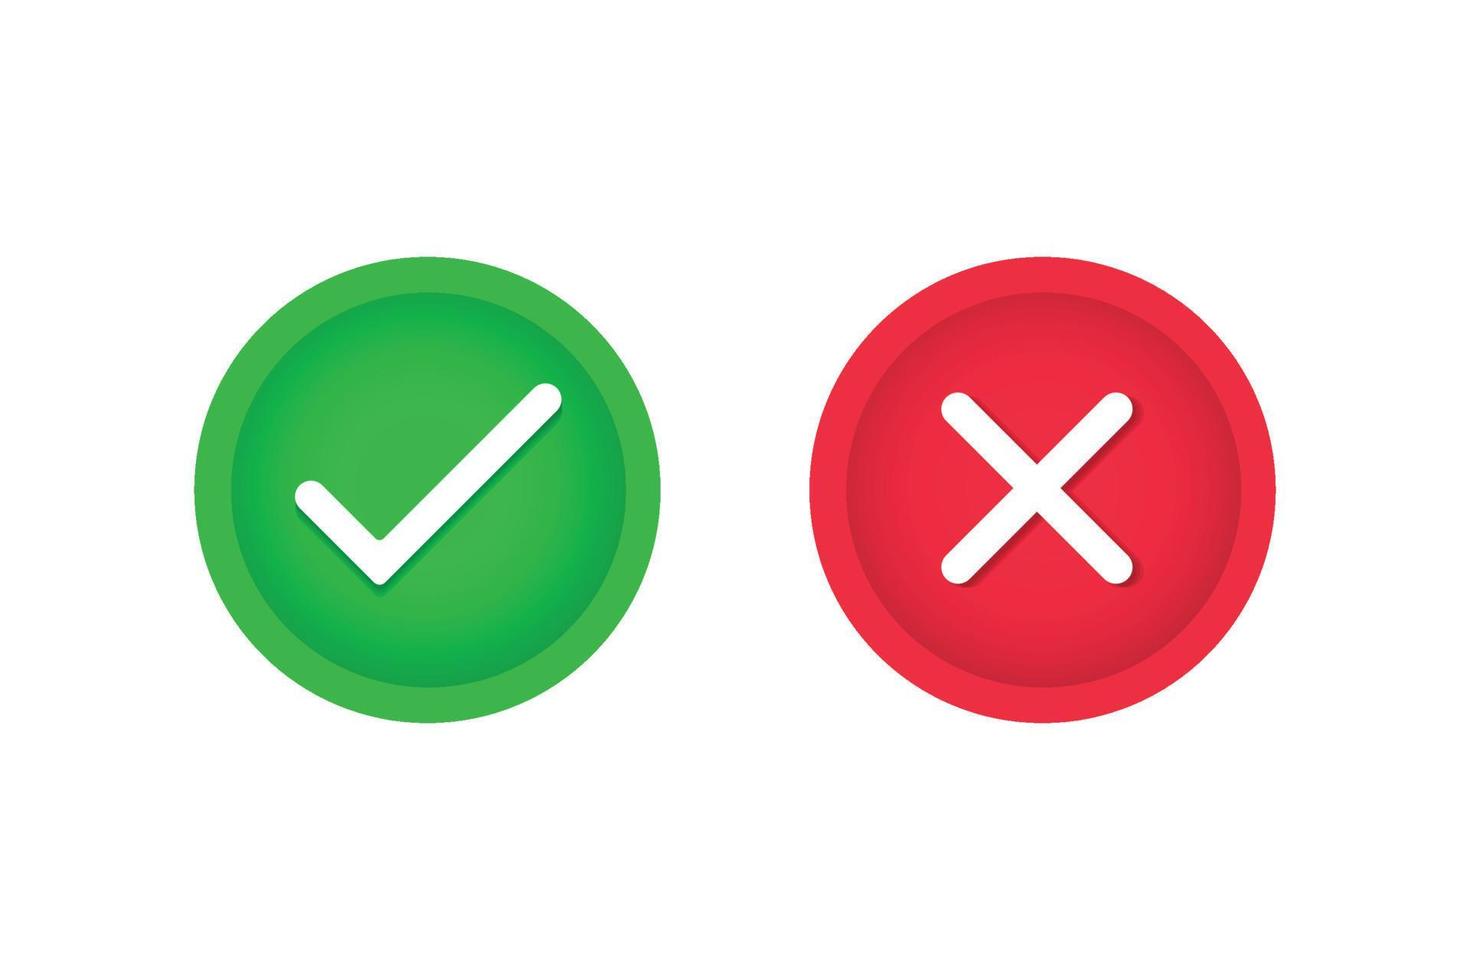 gratis vector verde cheque marca y rojo cruzar botones símbolo diseño